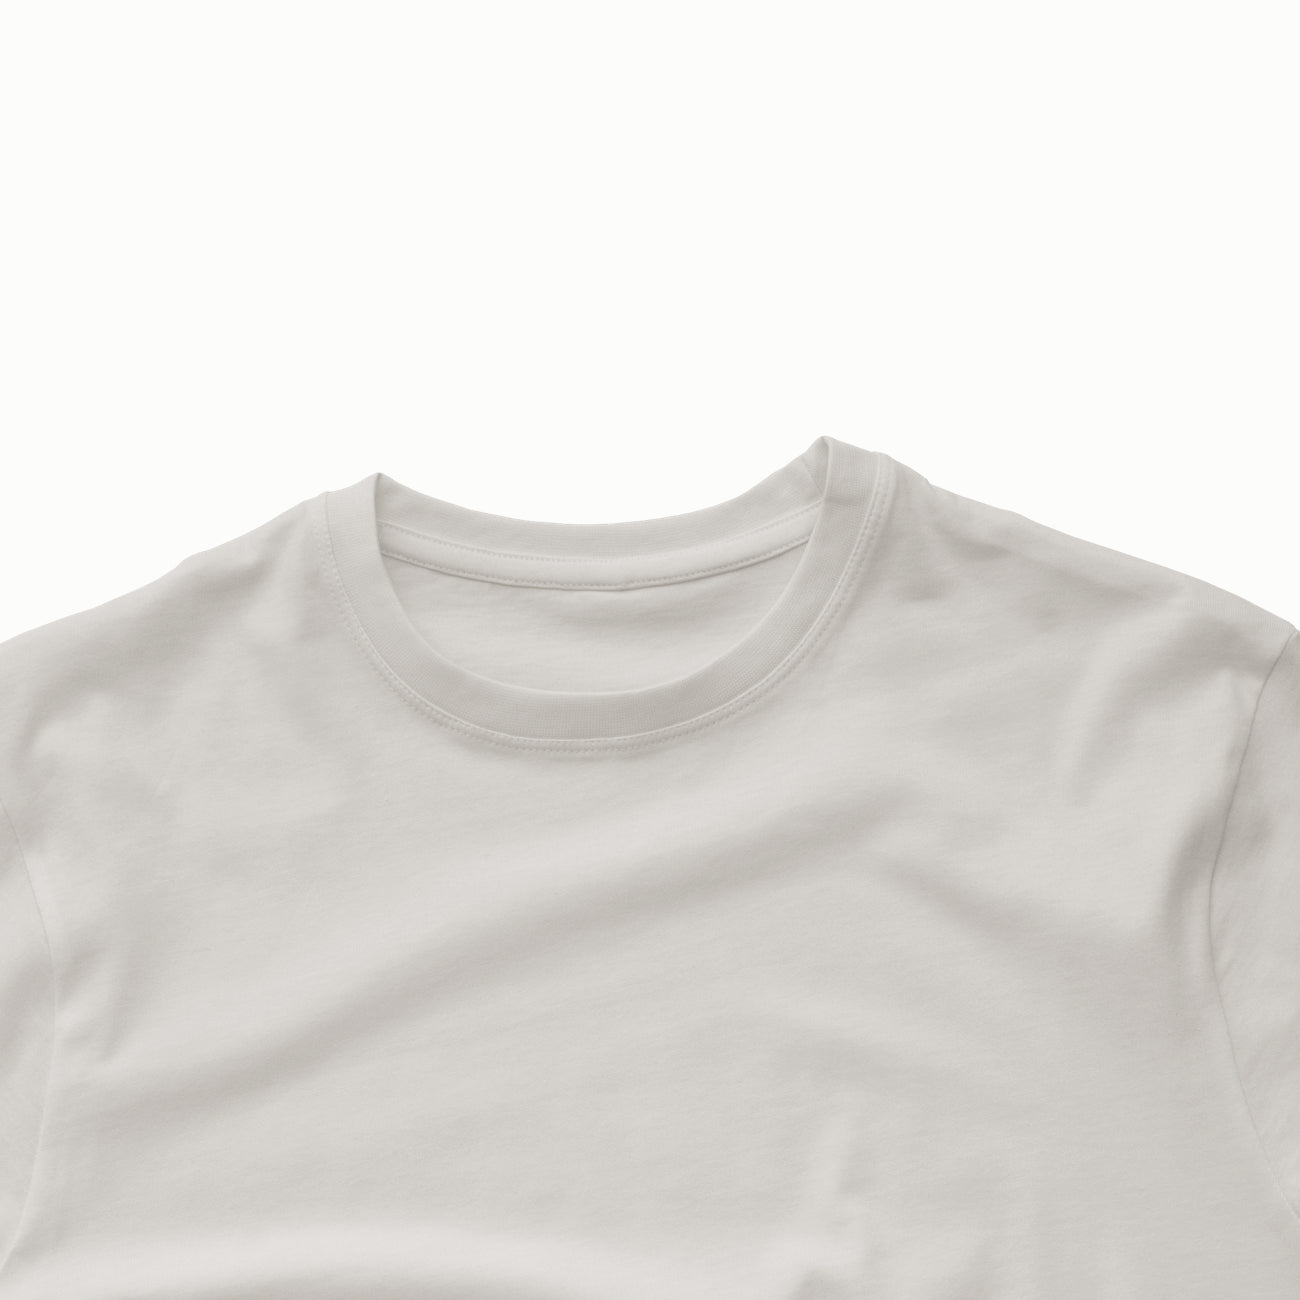 Favorite T-Shirt 002 Mockup (Front)